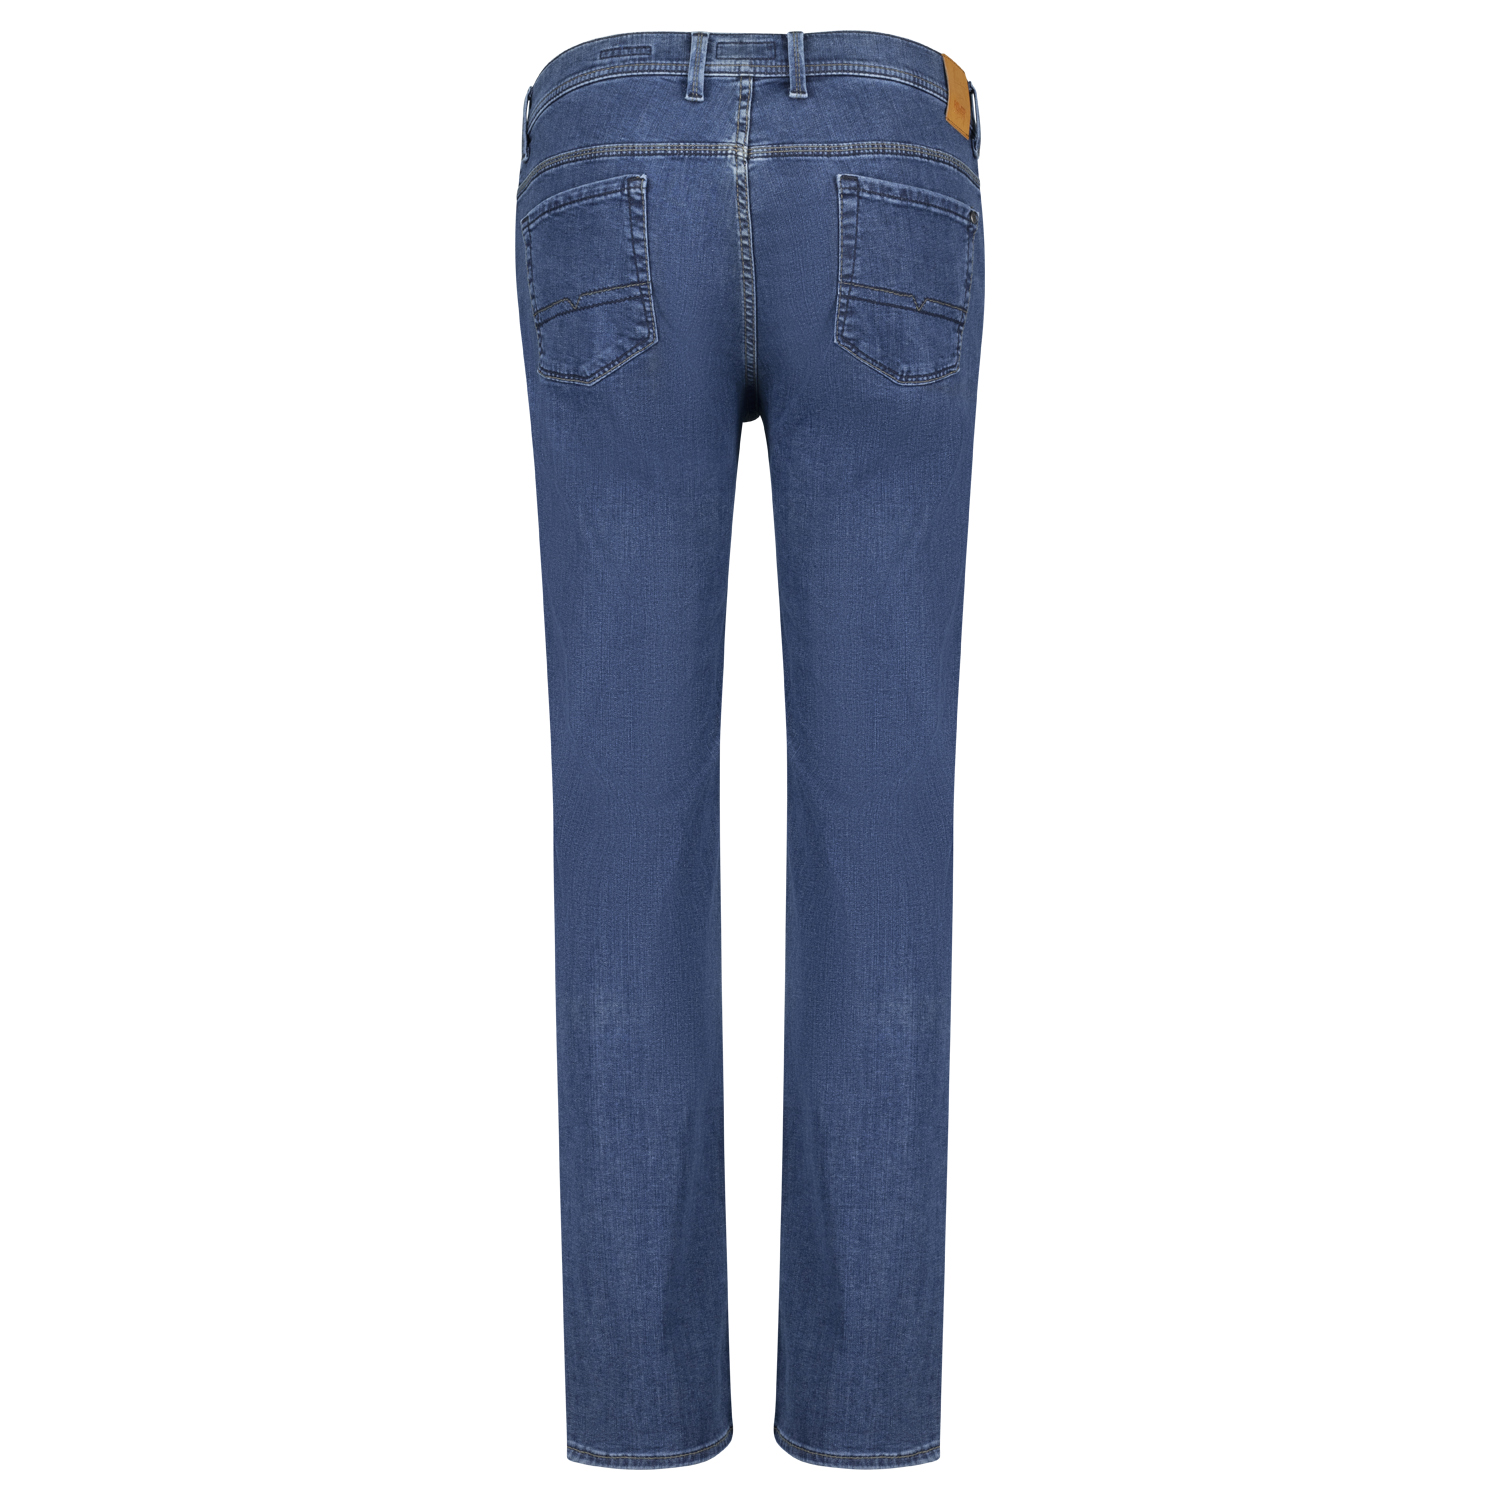 Pioneer Five Pocket Jeans untersetzte Größen Modell "Thomas" Megaflex in 28 - 40 blue stonewash